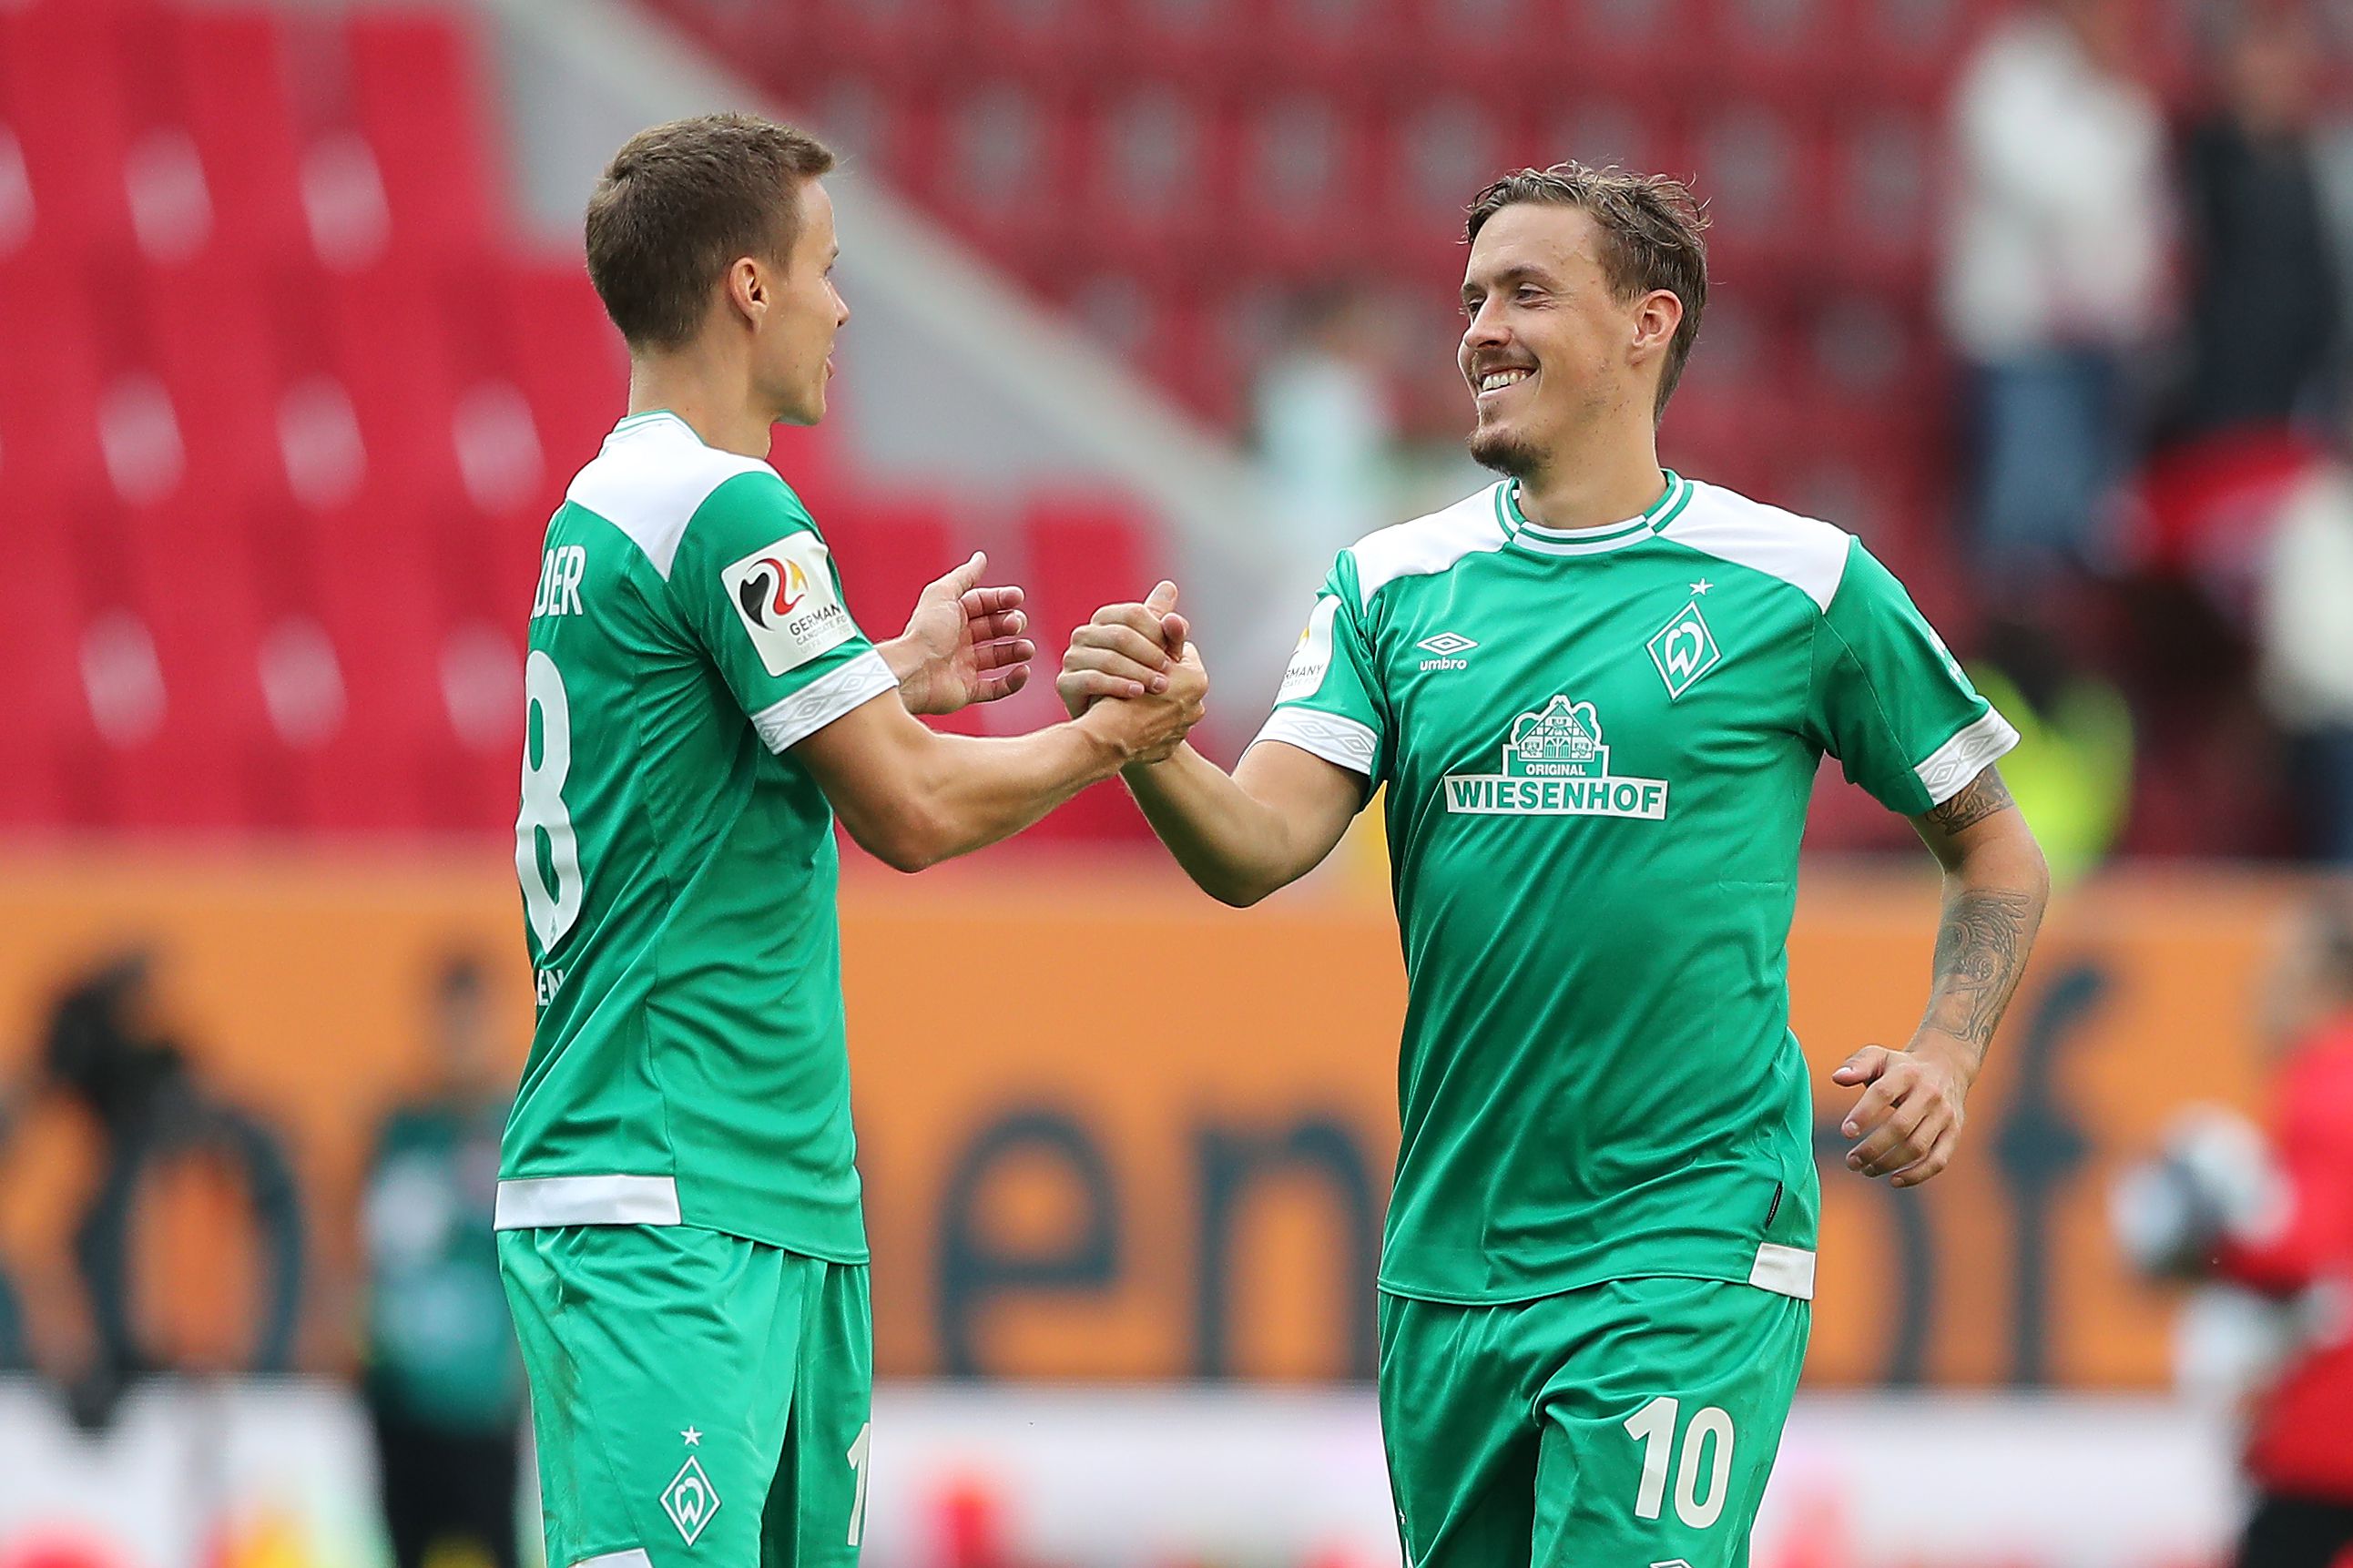 Kiütéses győzelmet aratott a Werder Bremen!